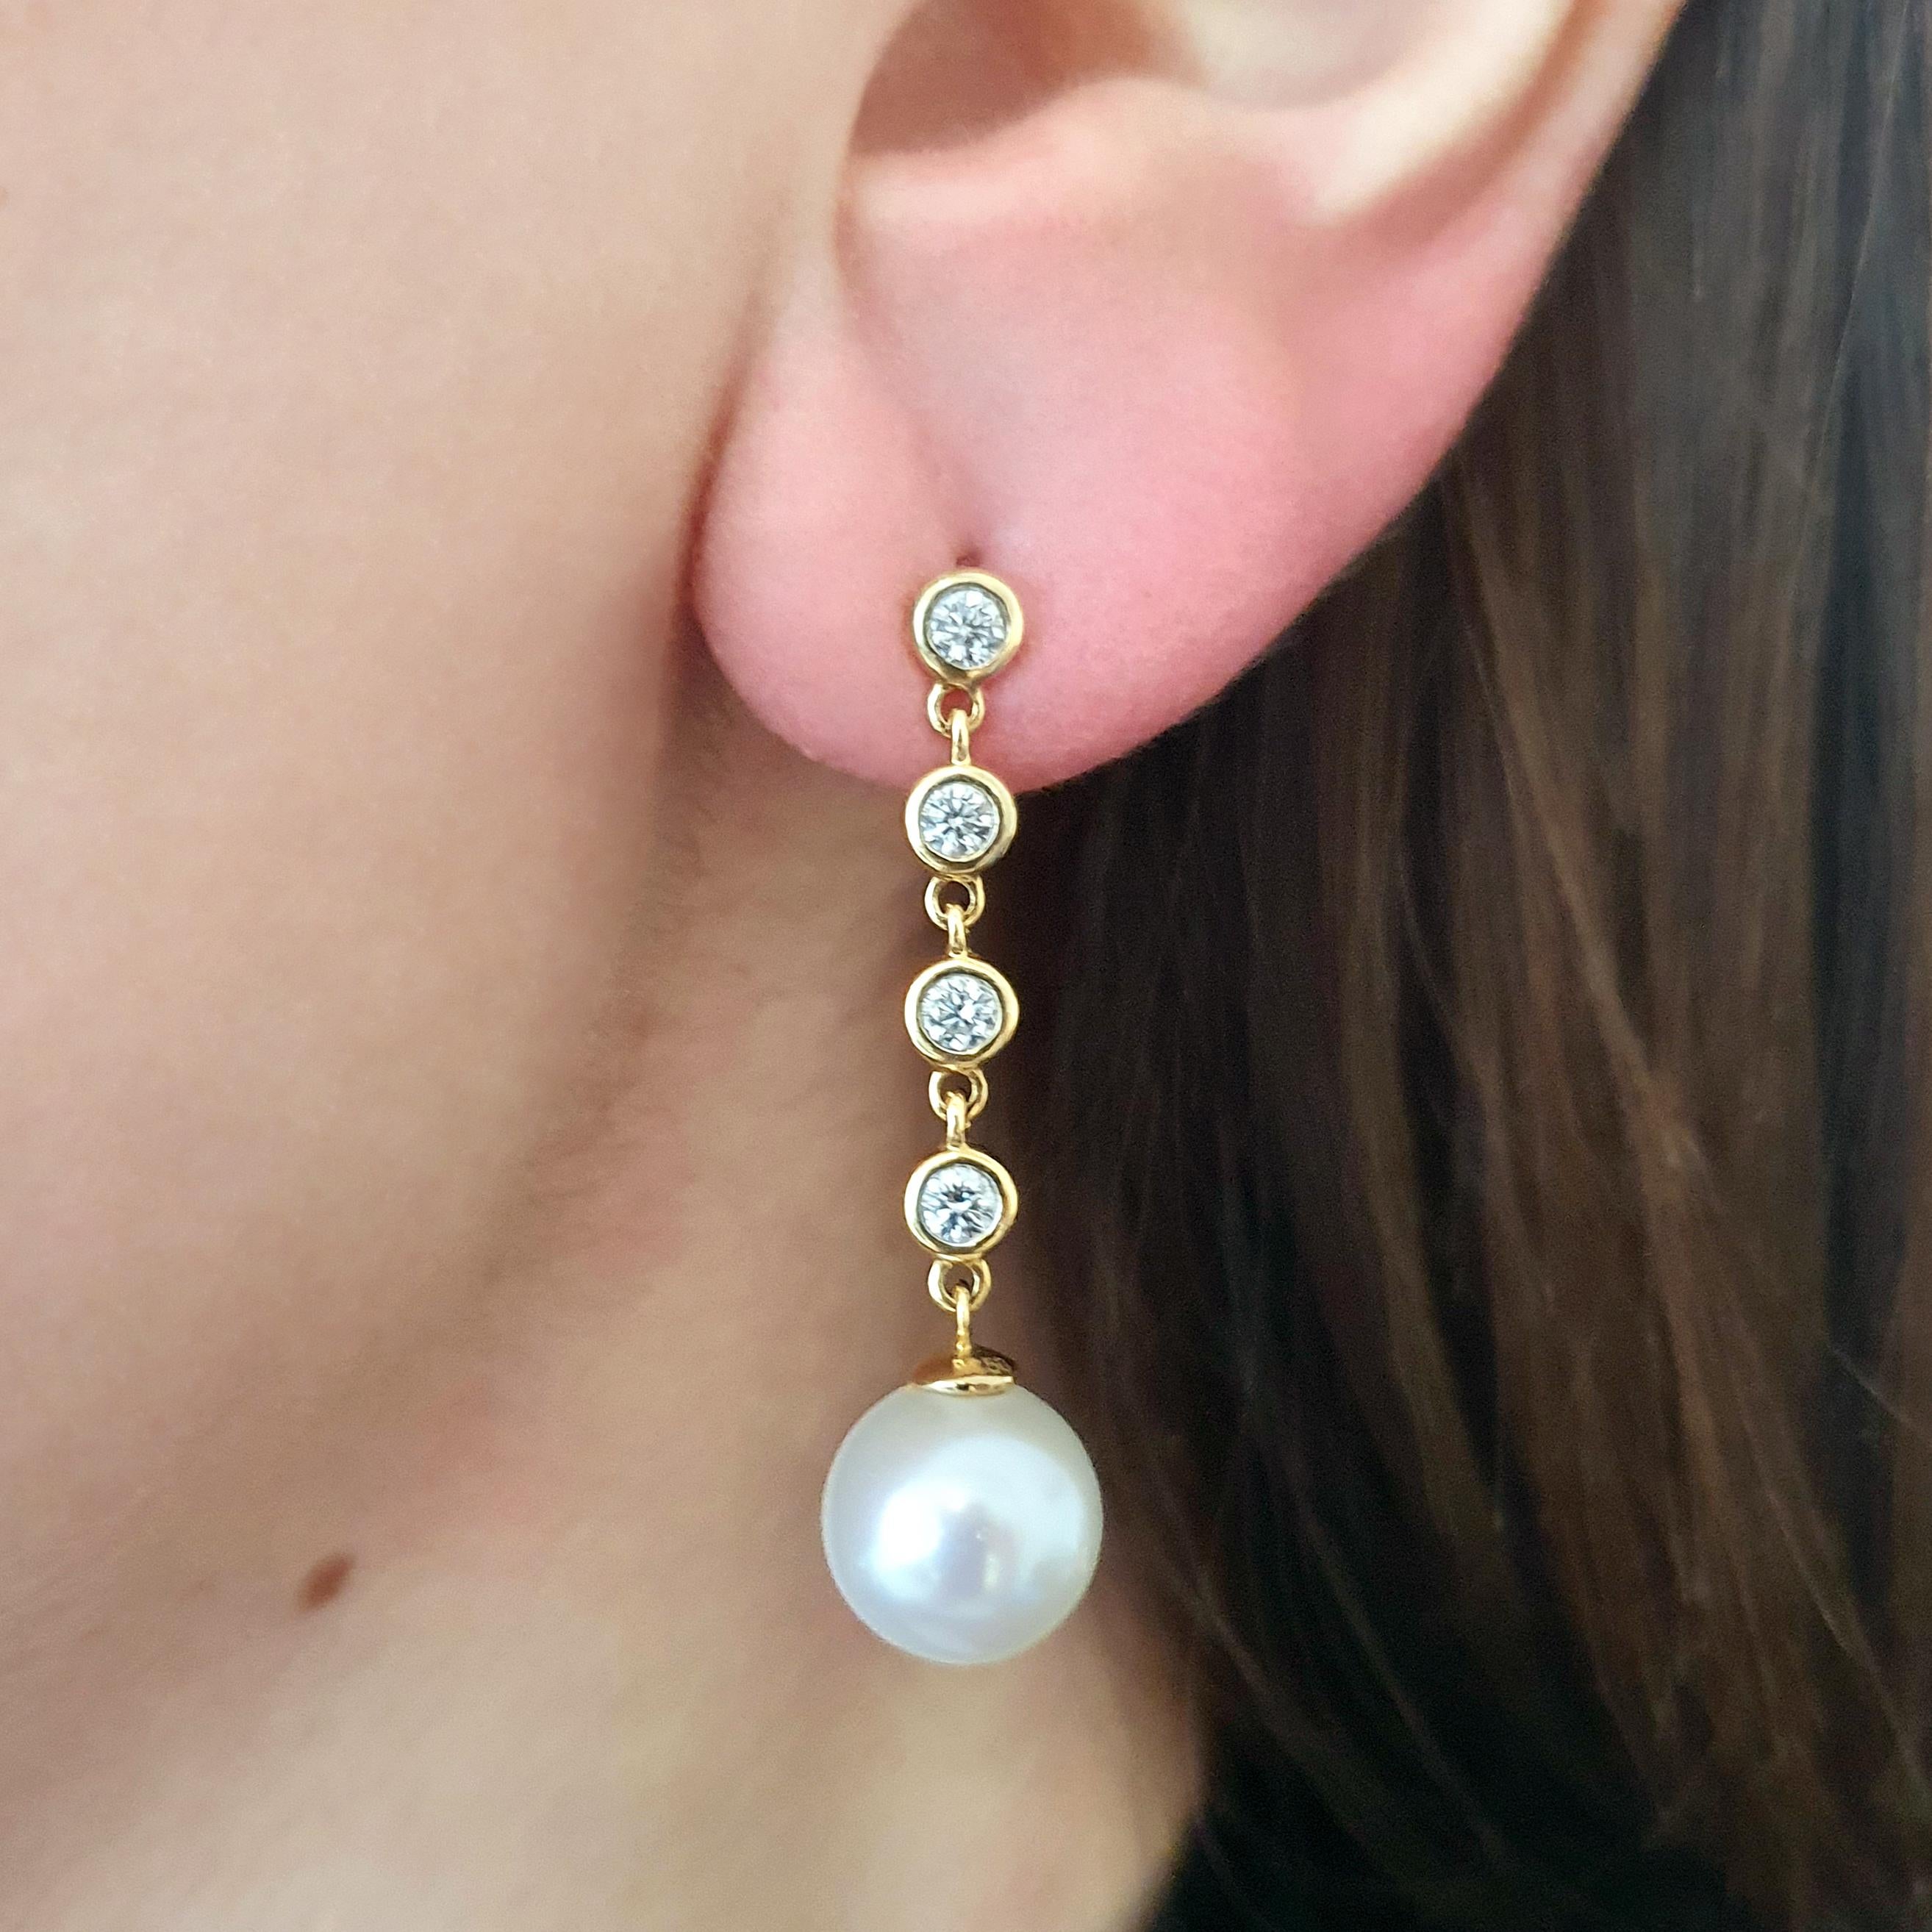 Perle und Diamant auf Gelbgold Ohrringe Ohranhänger.
Gesamthöhe: 1,38 Zoll (3,50 Zentimeter).
Gesamtgewicht: 5.60 Gramm.